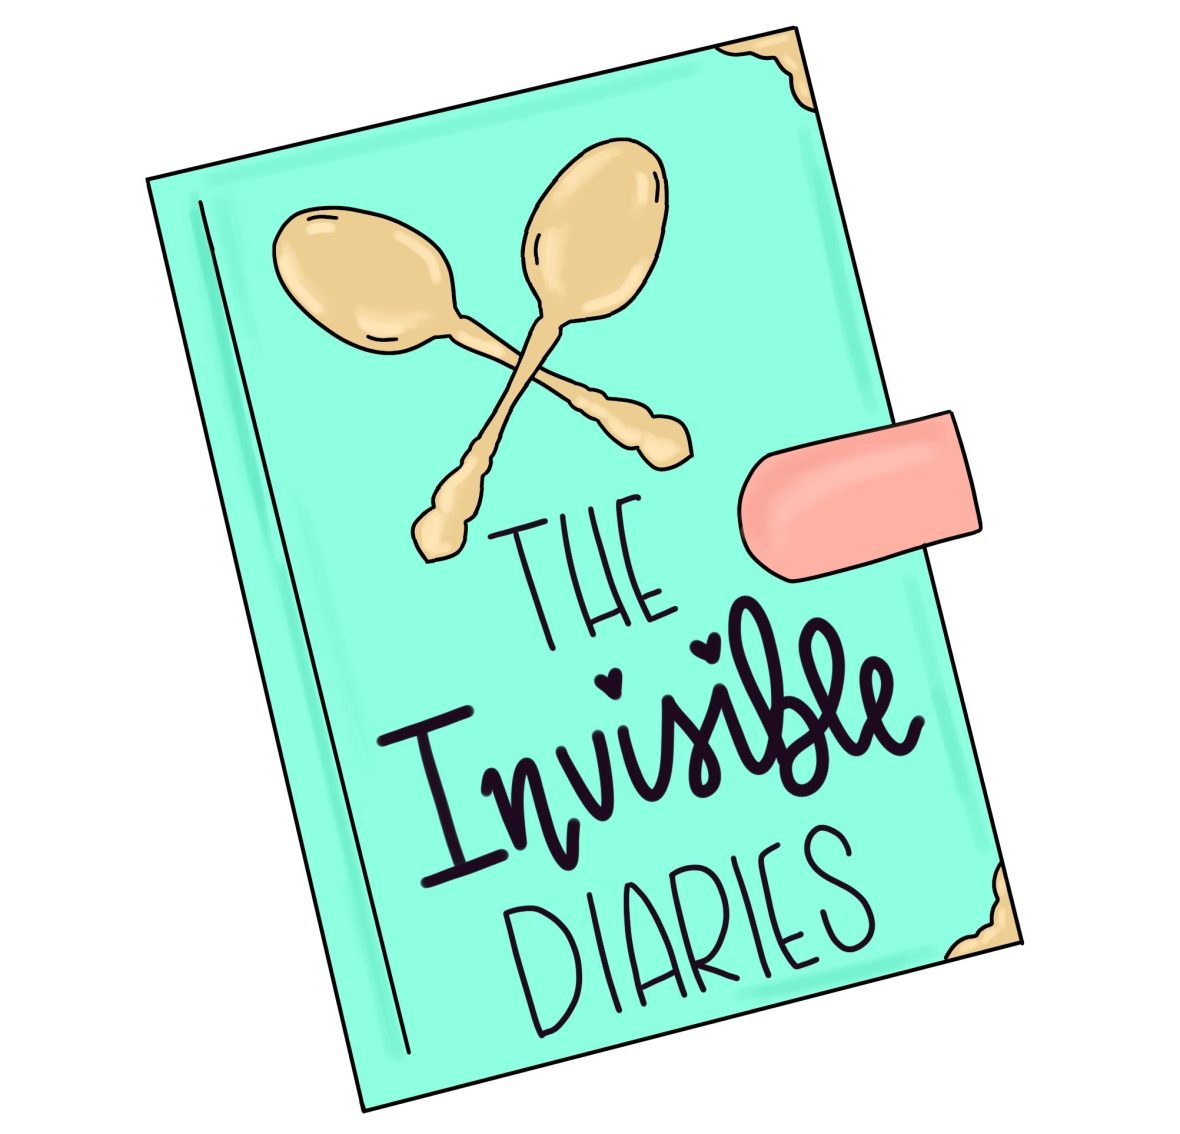 Invisible diary logo